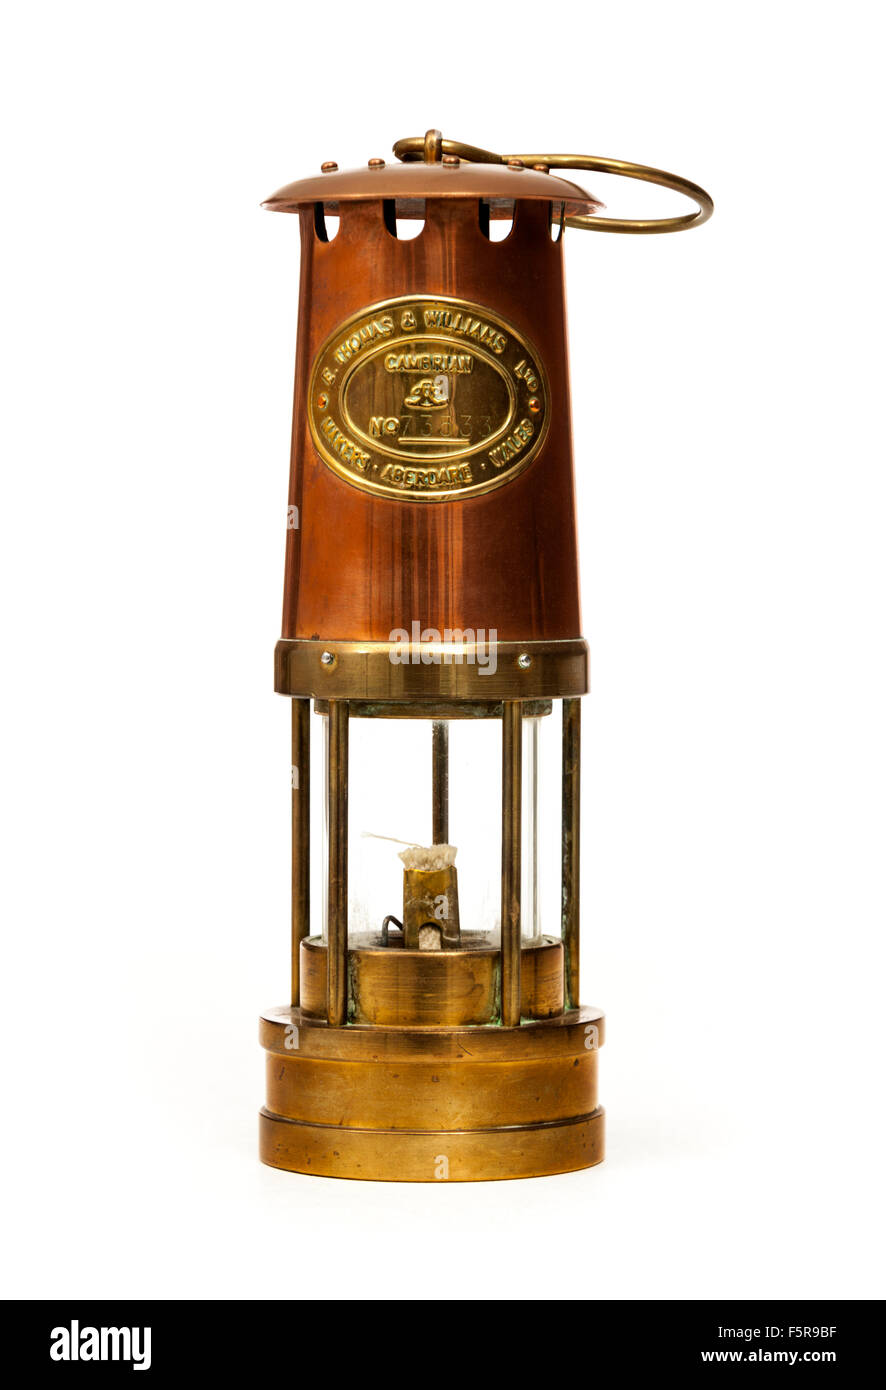 Vintage Coal mining safety lamp par E. Thomas & Williams Ltd, Aberdare, le Pays de Galles. Numéro de série 73533. Banque D'Images